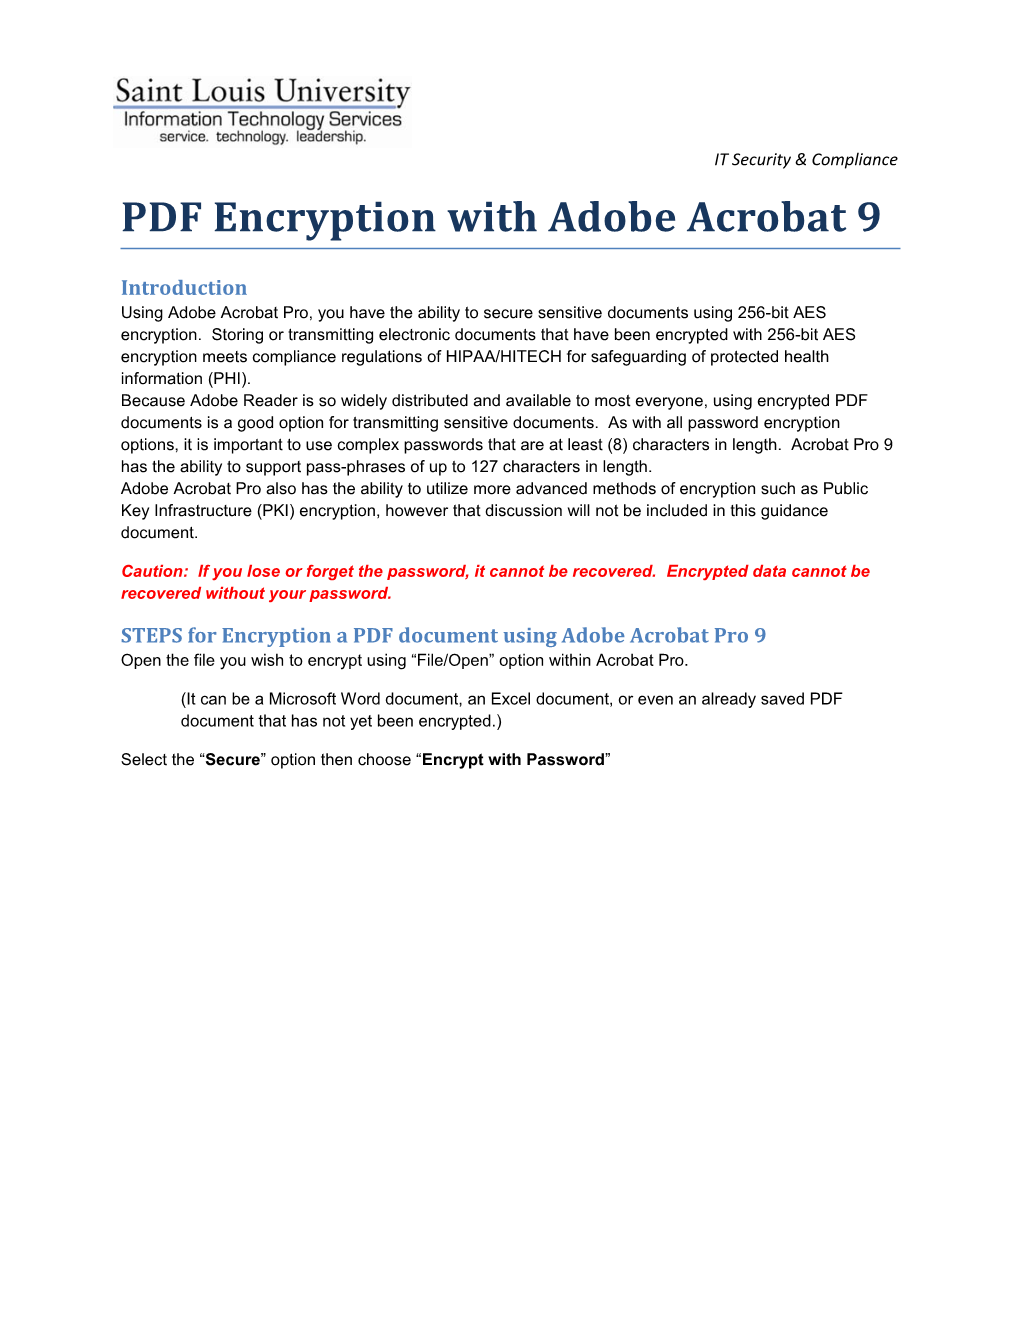 PDF Encryption with Adobe Acrobat 9